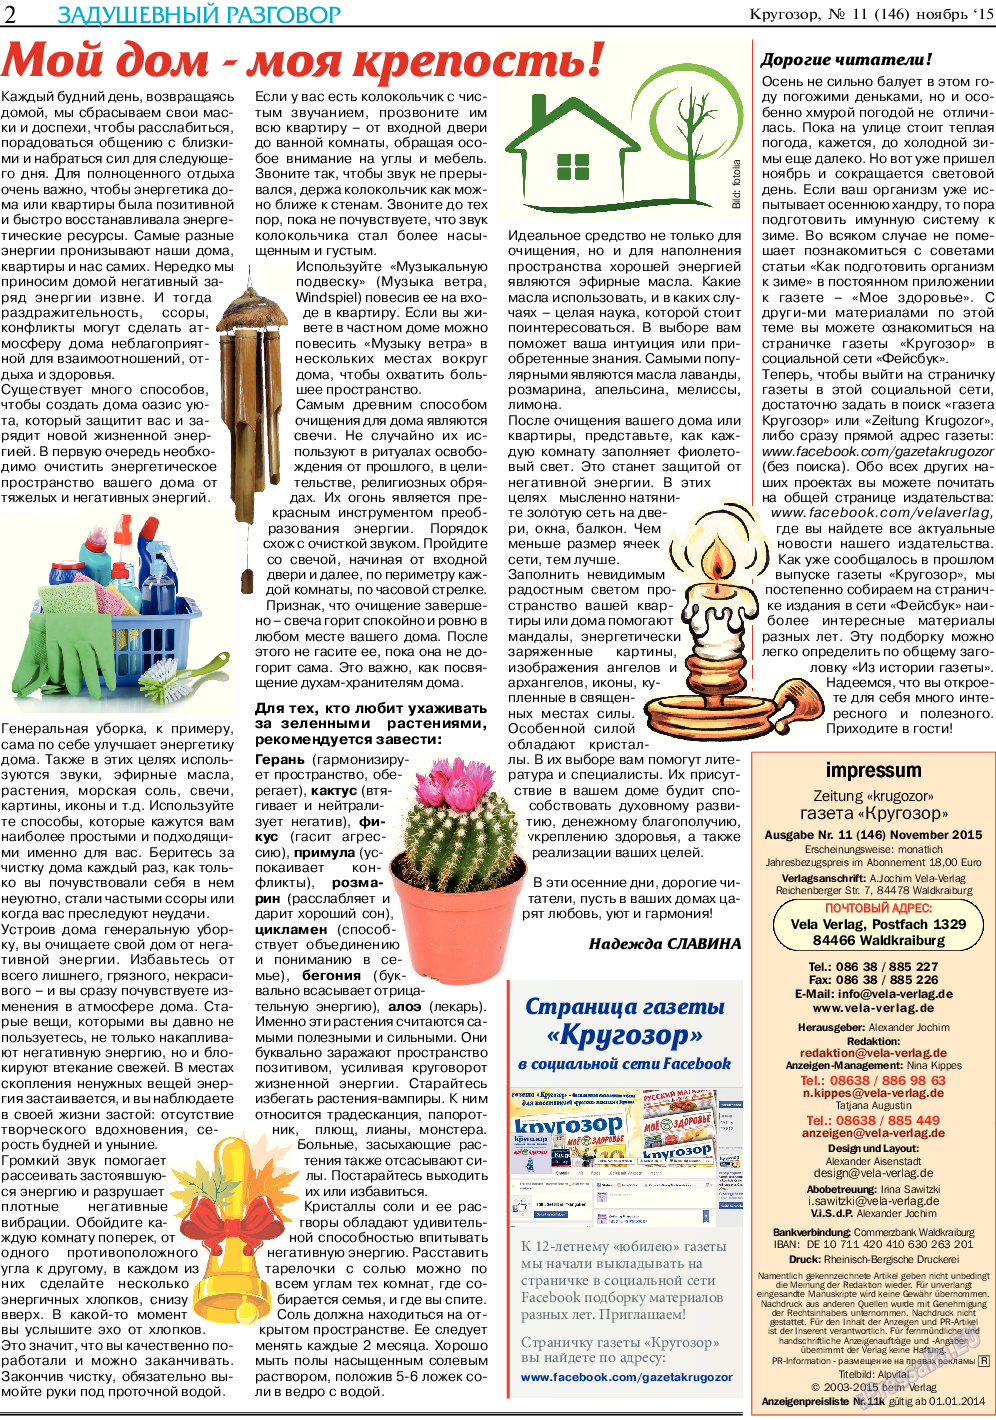 Кругозор, газета. 2015 №11 стр.2